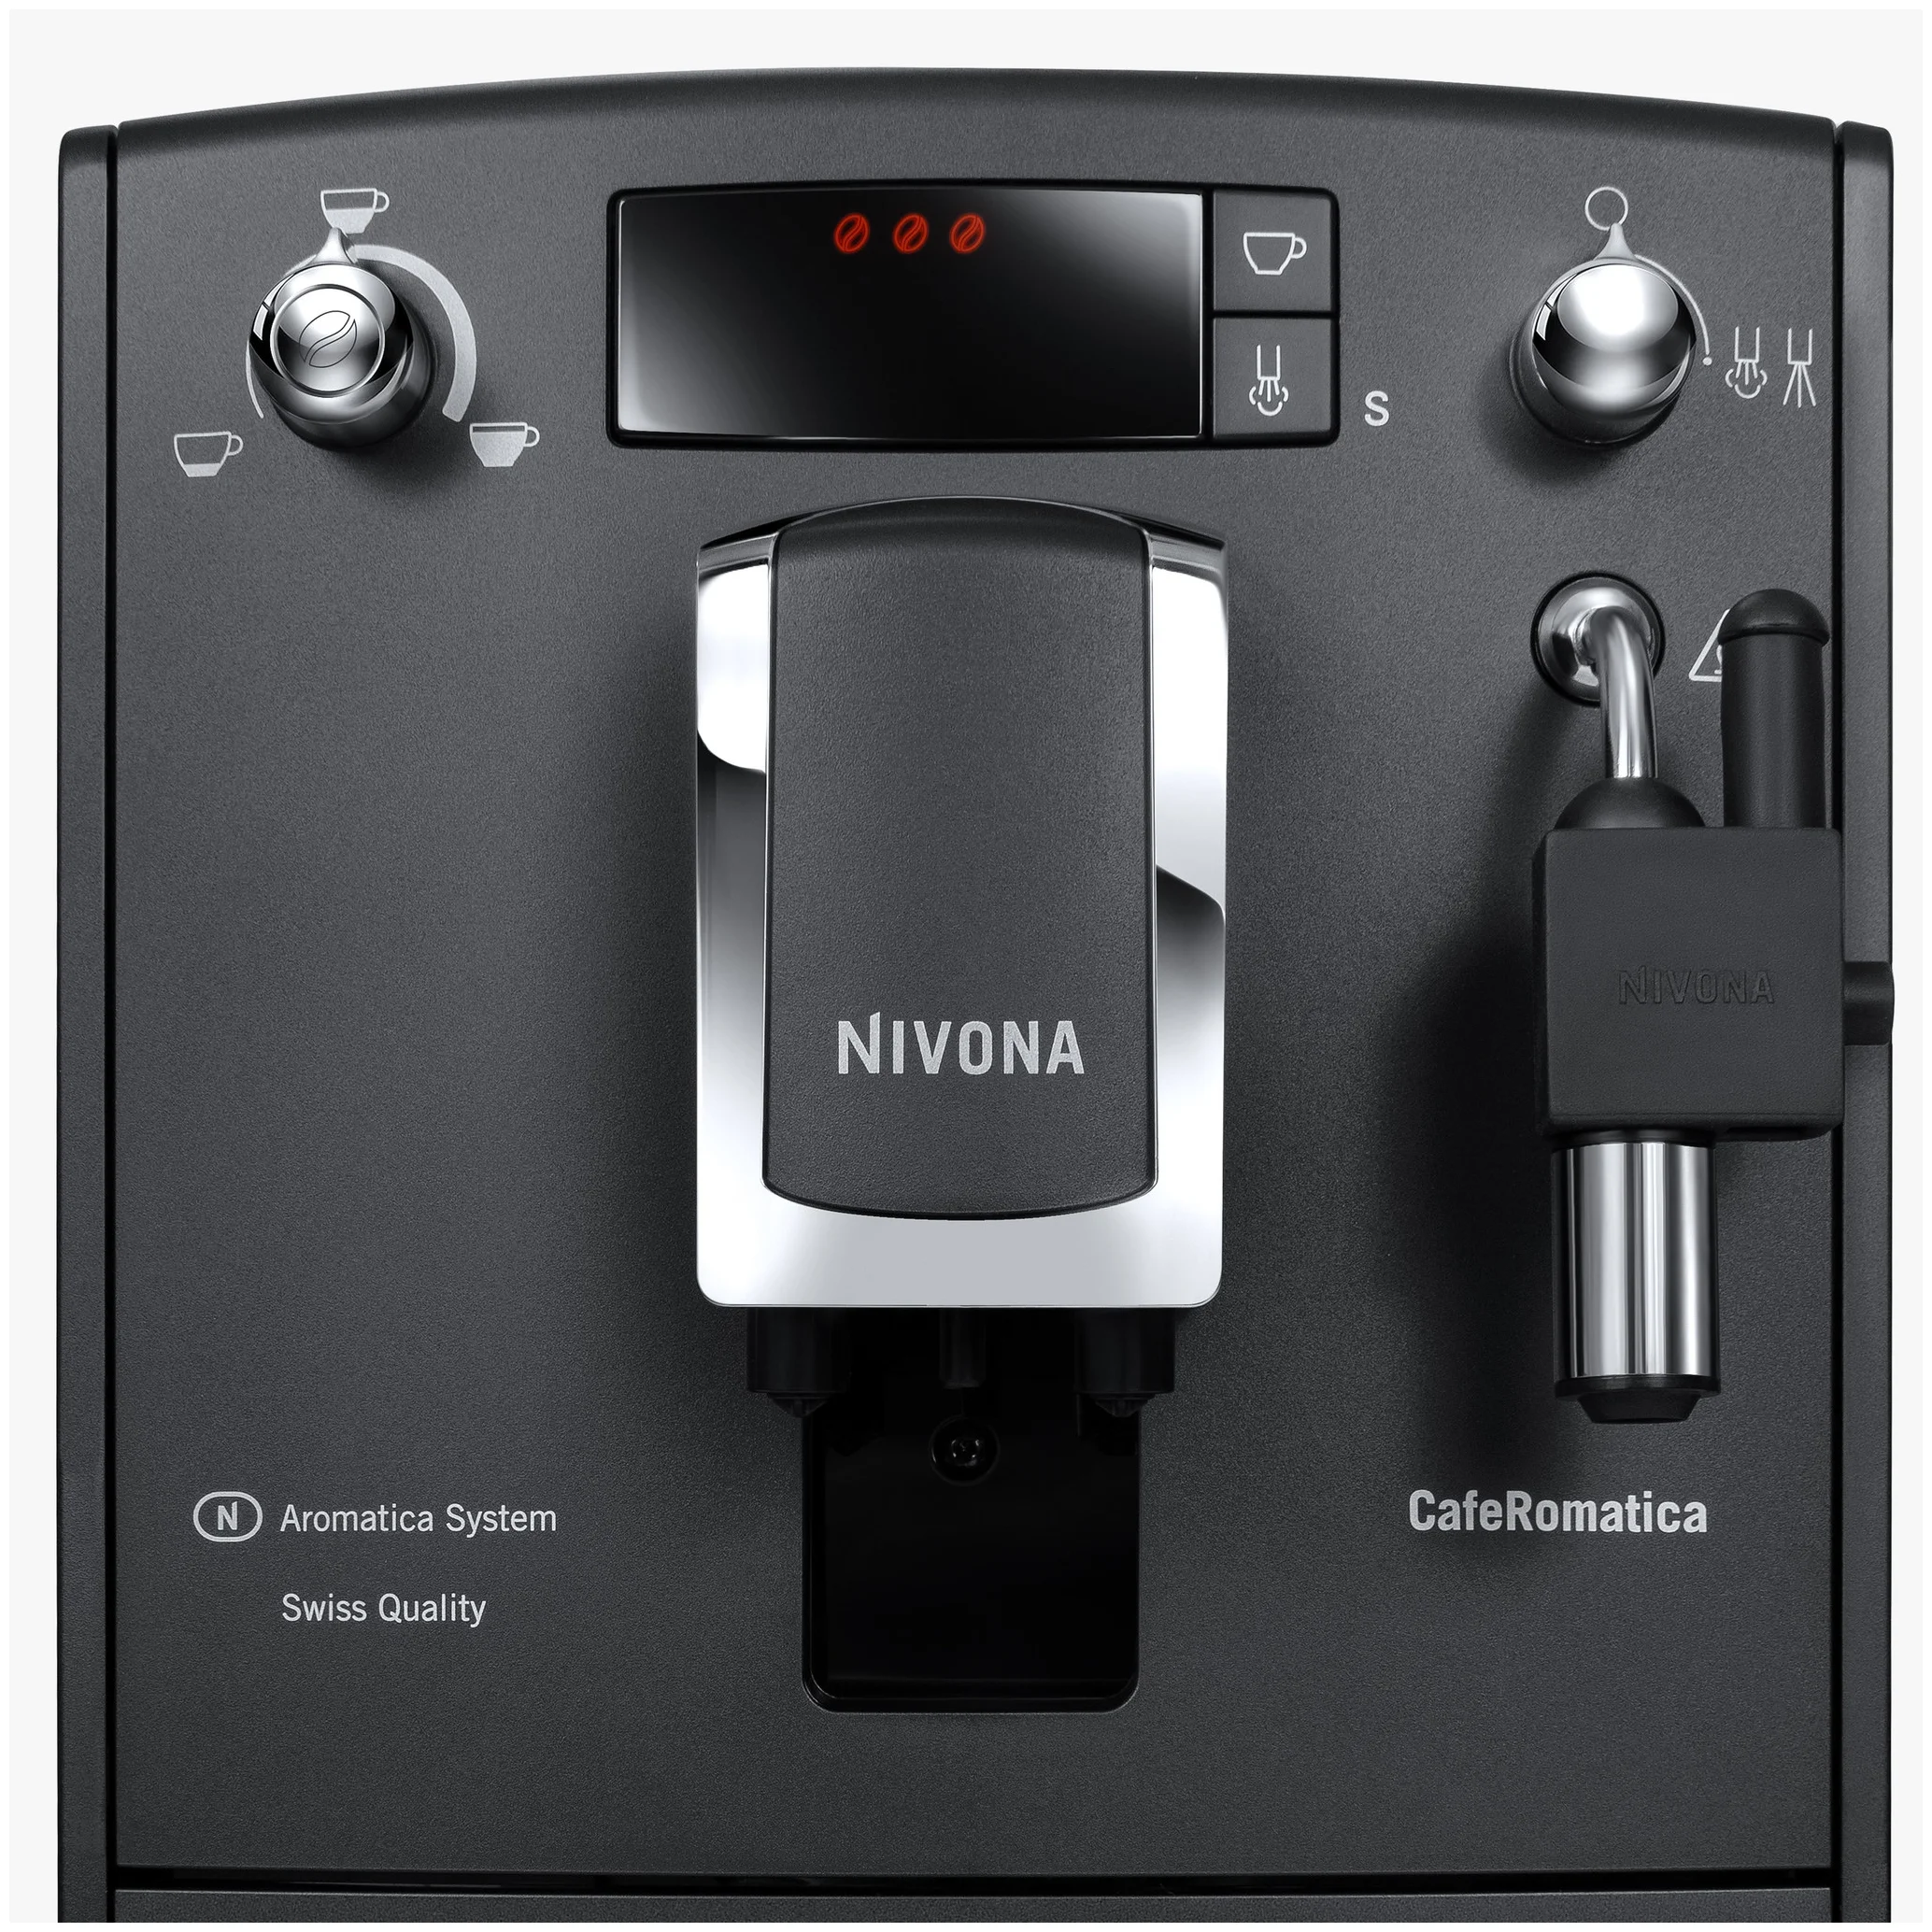 Nivona CafeRomatica NICR 520 - доп. функции: автоотключение при неиспользовании, подогрев чашек, автоматическая декальцинация, подача горячей воды